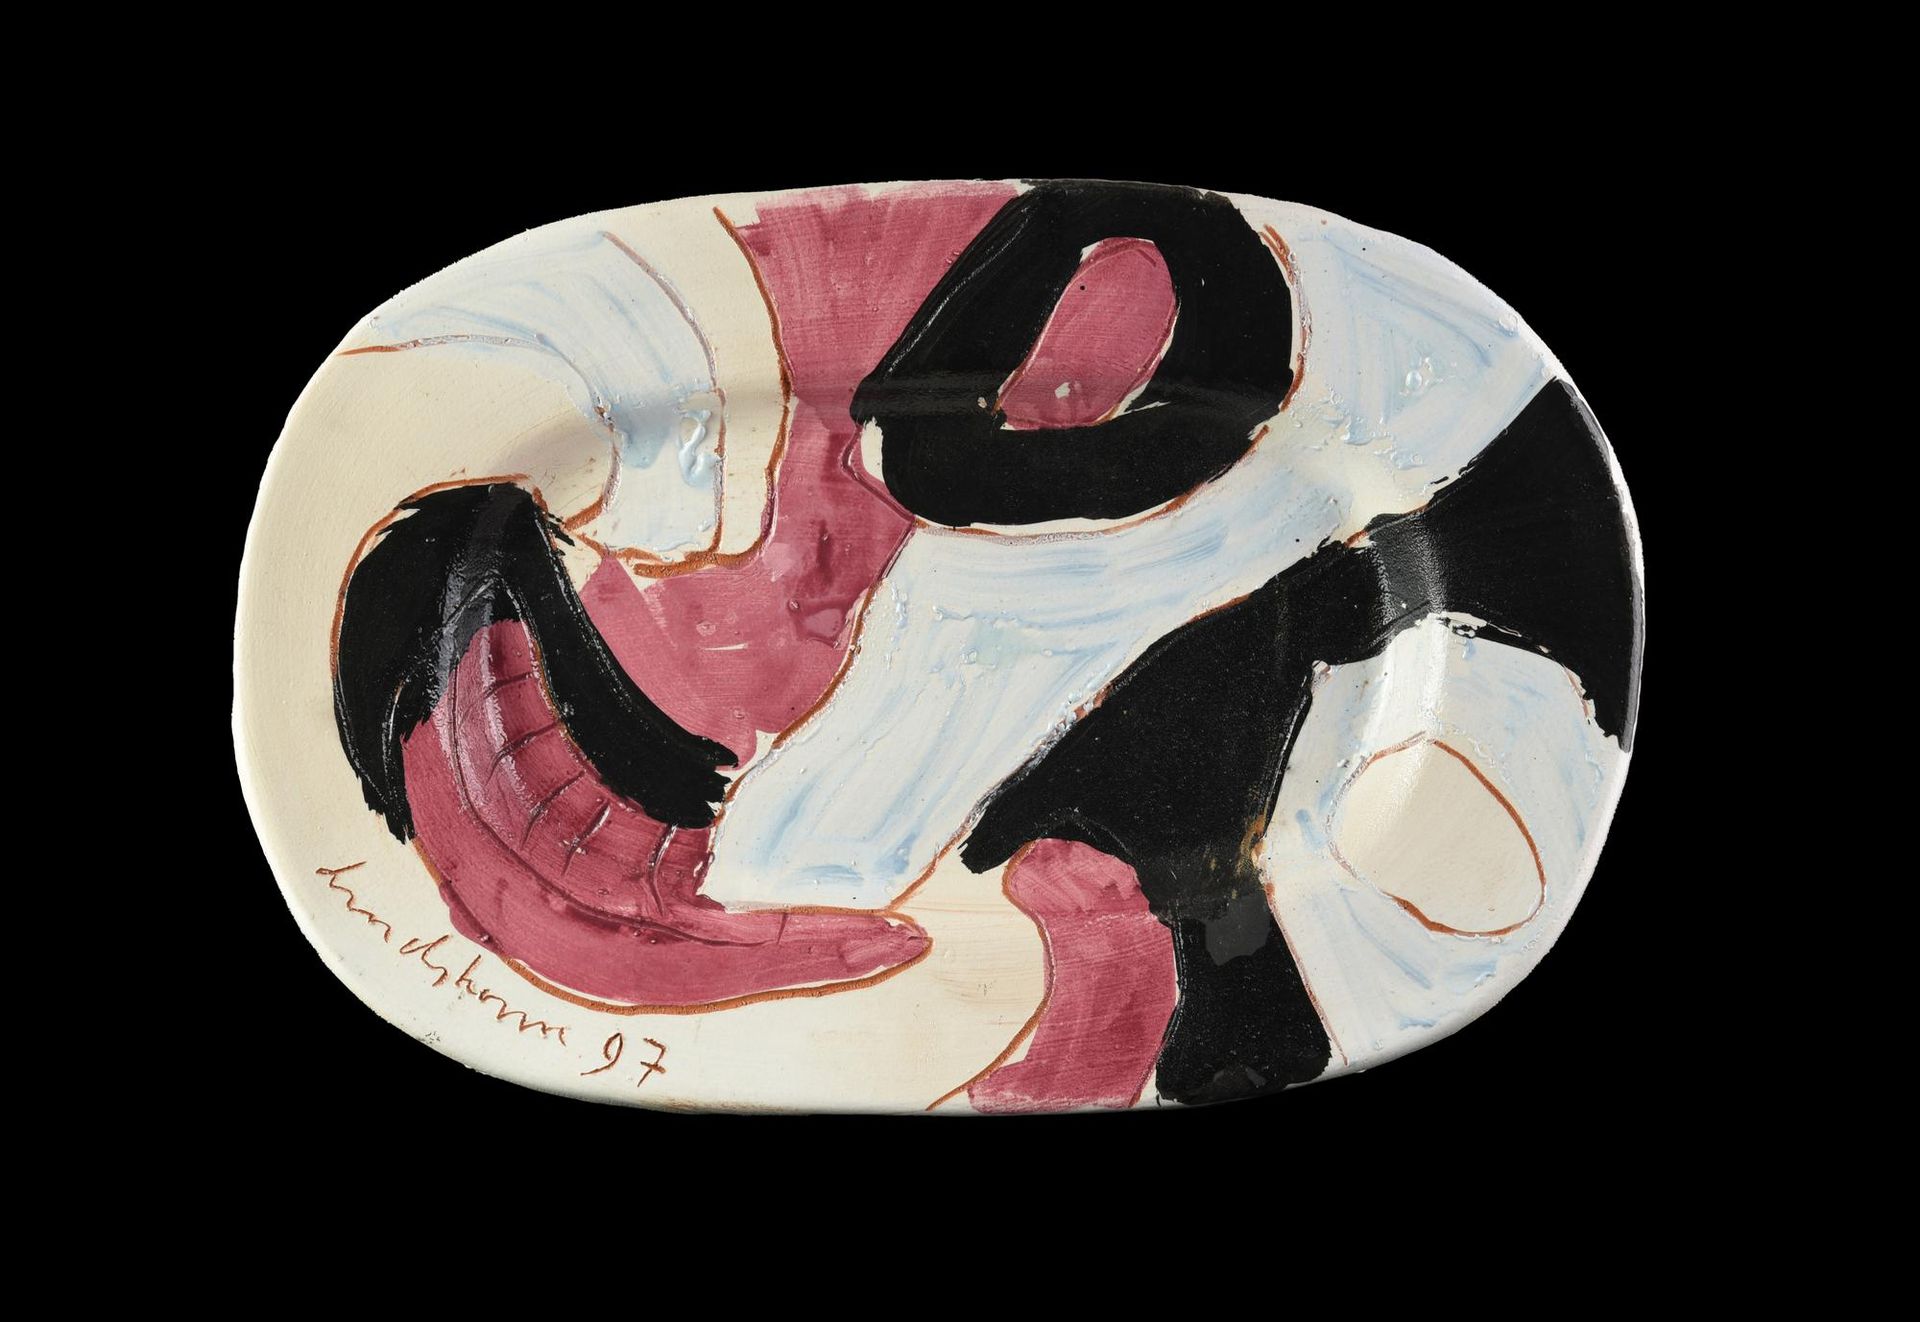 Bengt Lindstrom Bengt Lindstrom

DISH

cerámica, 5x53x35 cm 

firma y fecha

 

&hellip;